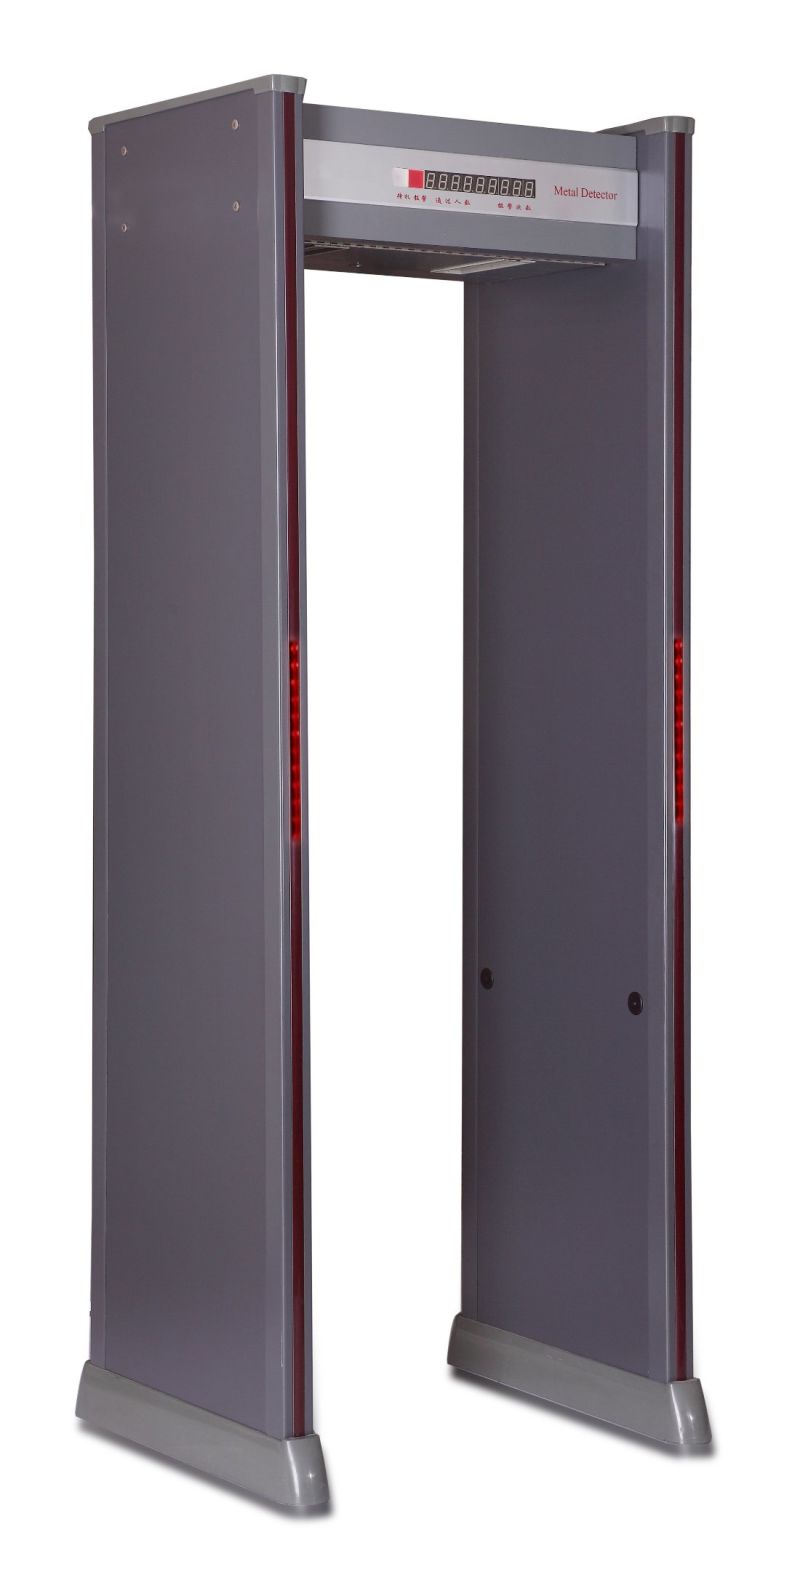 Hot Sales Door Frame Metal Detector with 18 Detection Zones